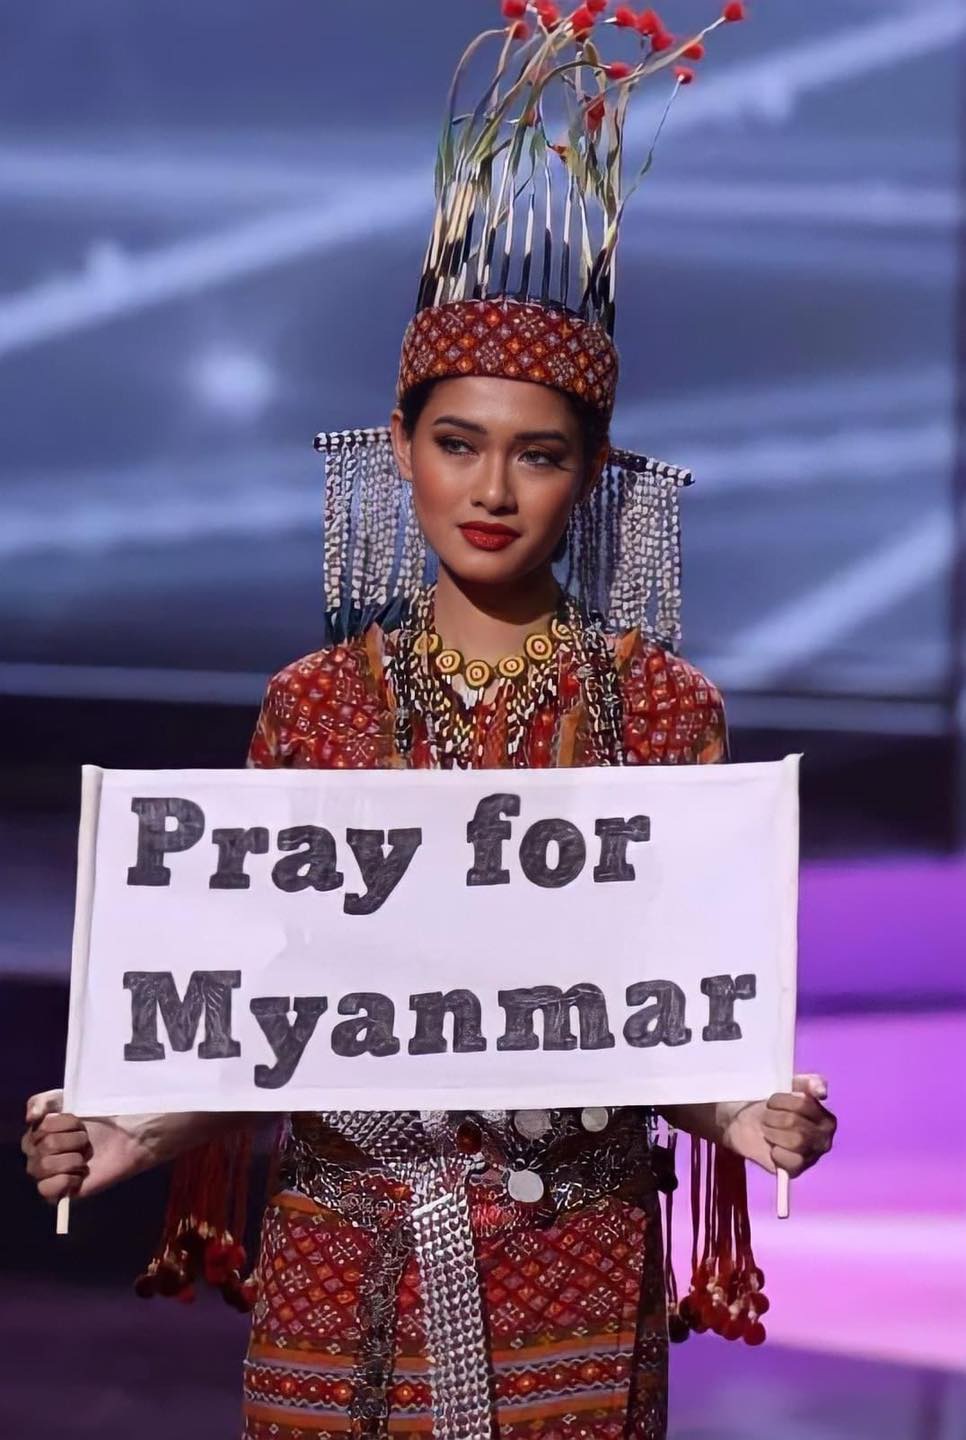 Vừa bác tin đồn bị truy nã, Hoa hậu Myanmar quyết định ở lại Mỹ làm việc - Ảnh 3.